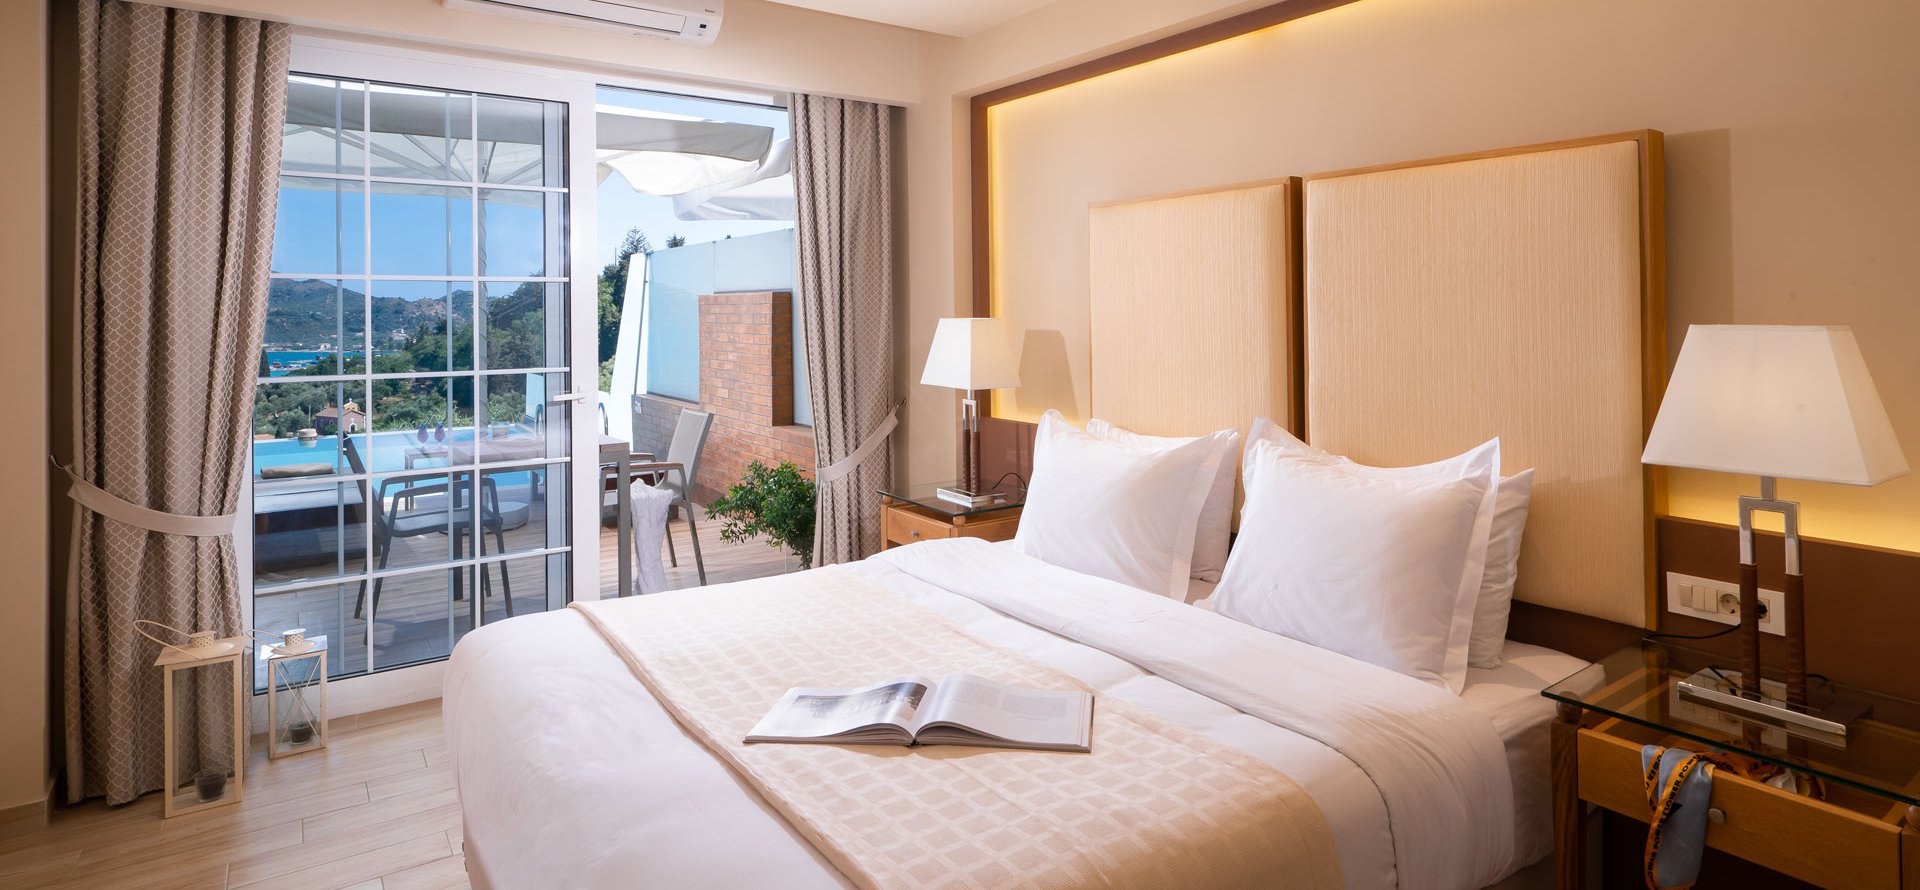 Το υπνοδωμάτιο της Σουίτας με Ιδιωτική Πισίνα του Avalon Palace Hotel